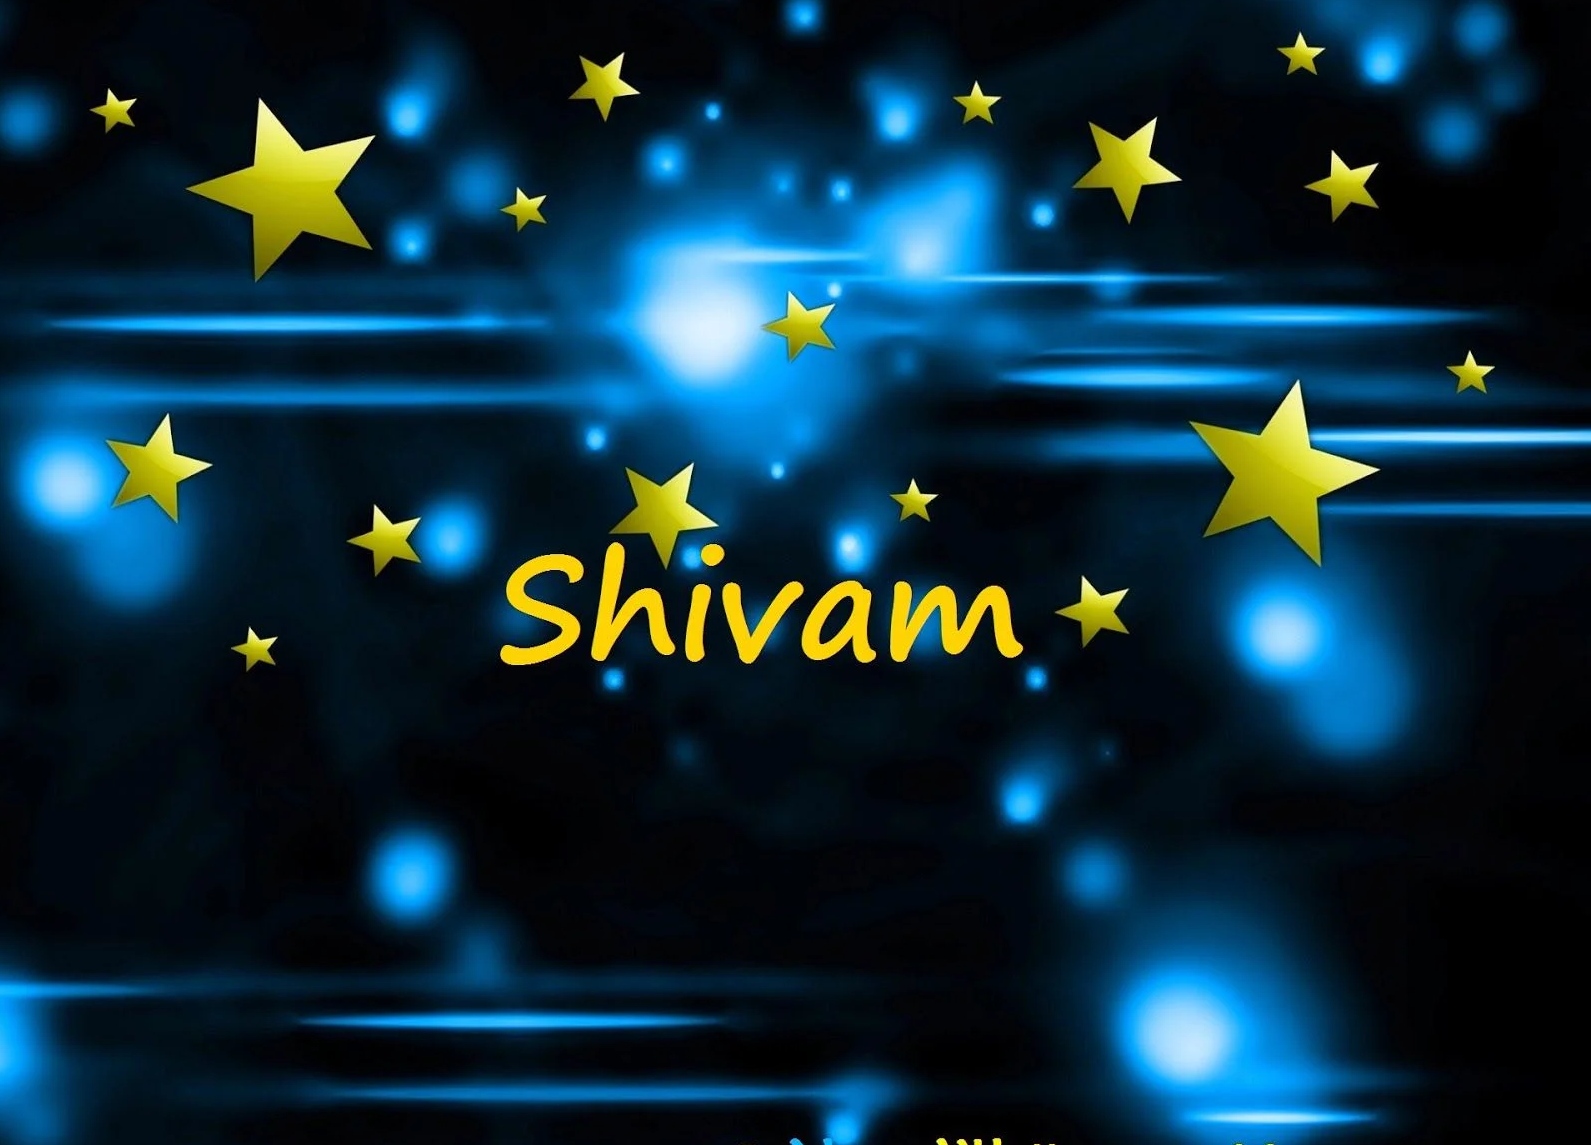 Shivam name - star bg shivam